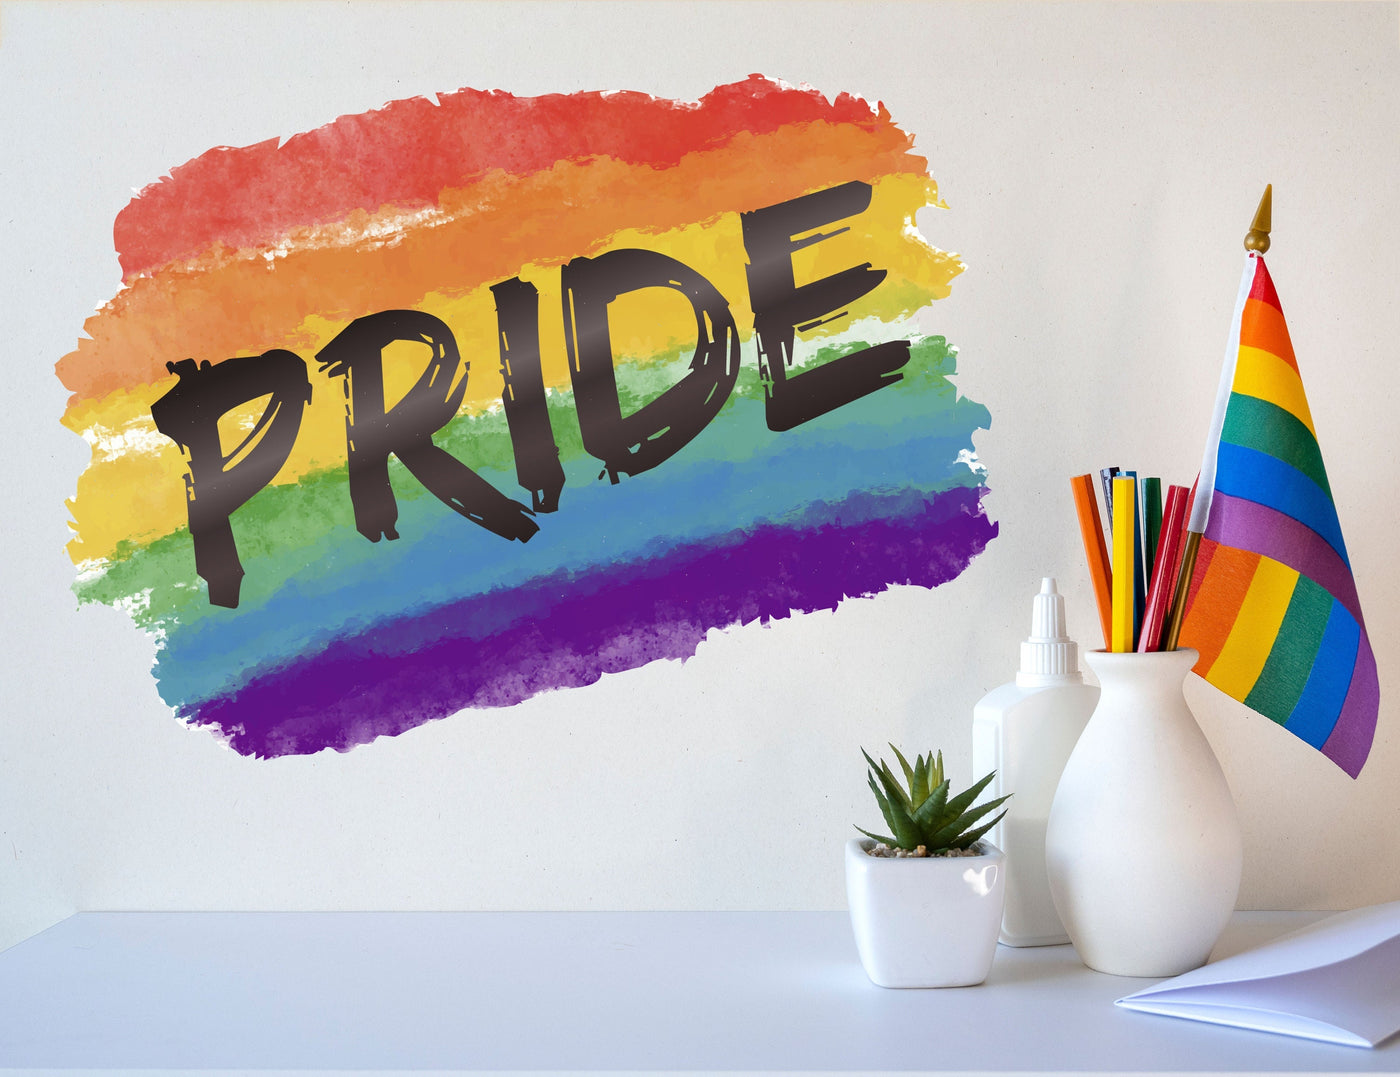 Decoração de decalque de parede do orgulho para dormitório - Adesivos de arco-íris em aquarela para decoração de quarto - Decalque do orgulho LGBT para escritório - Decoração do mês do orgulho para pátio